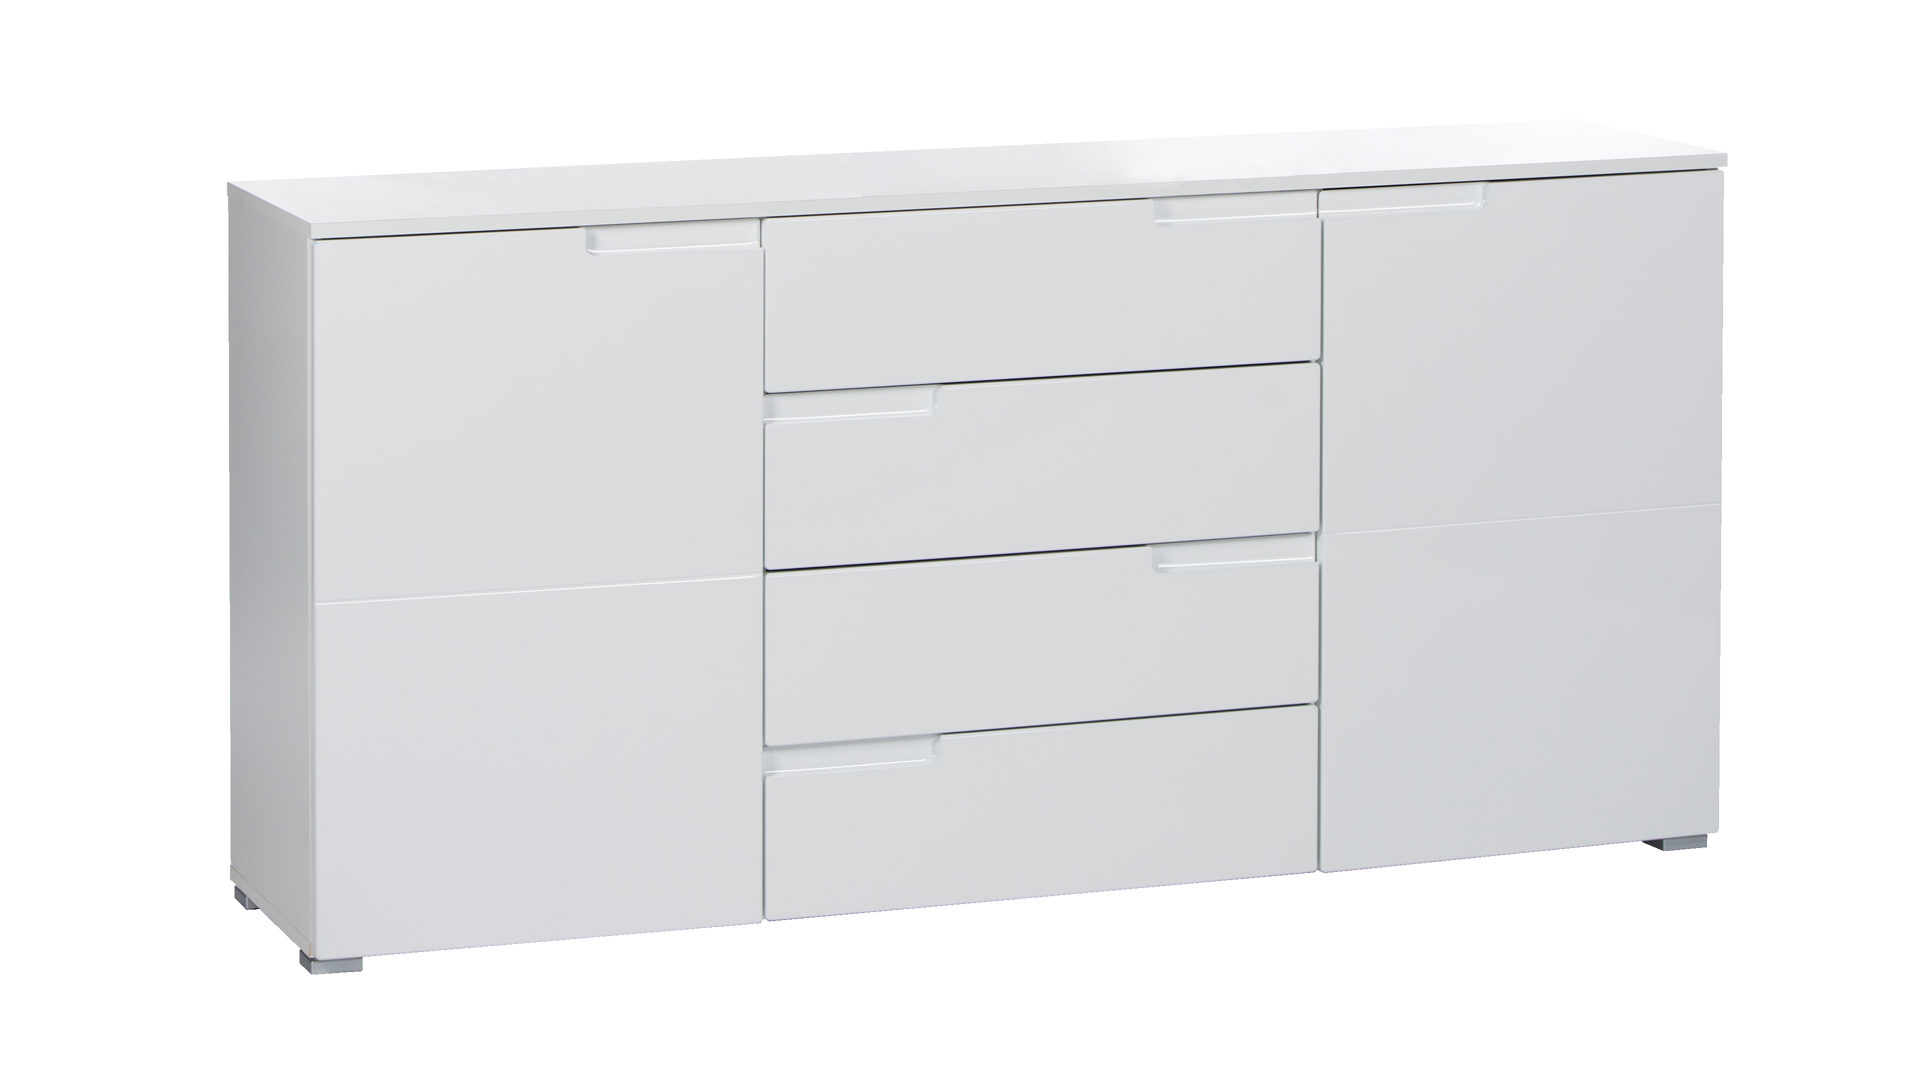 Sideboard Bega consult aus MDF in Weiß Sideboard als Kombischrank und Wohnzimmermöbel weiße Hochglanzfront & weißer Korpus – vier Schubladen, zwei Türen